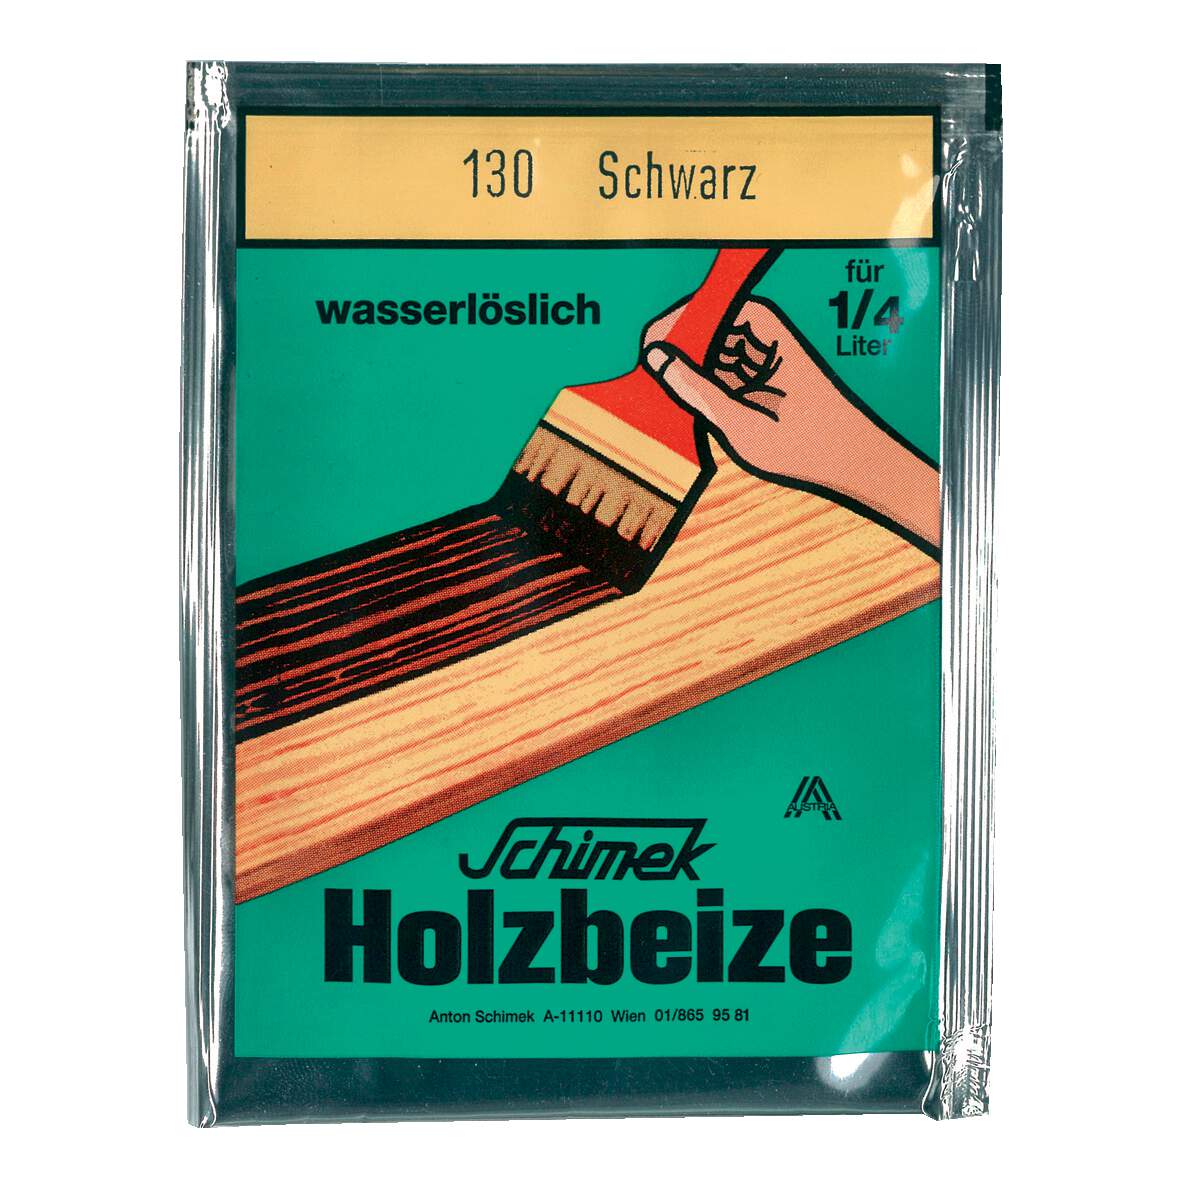 1216625 - Holzbeize Eichenbraun mittel Nr.105 wasserlöslich